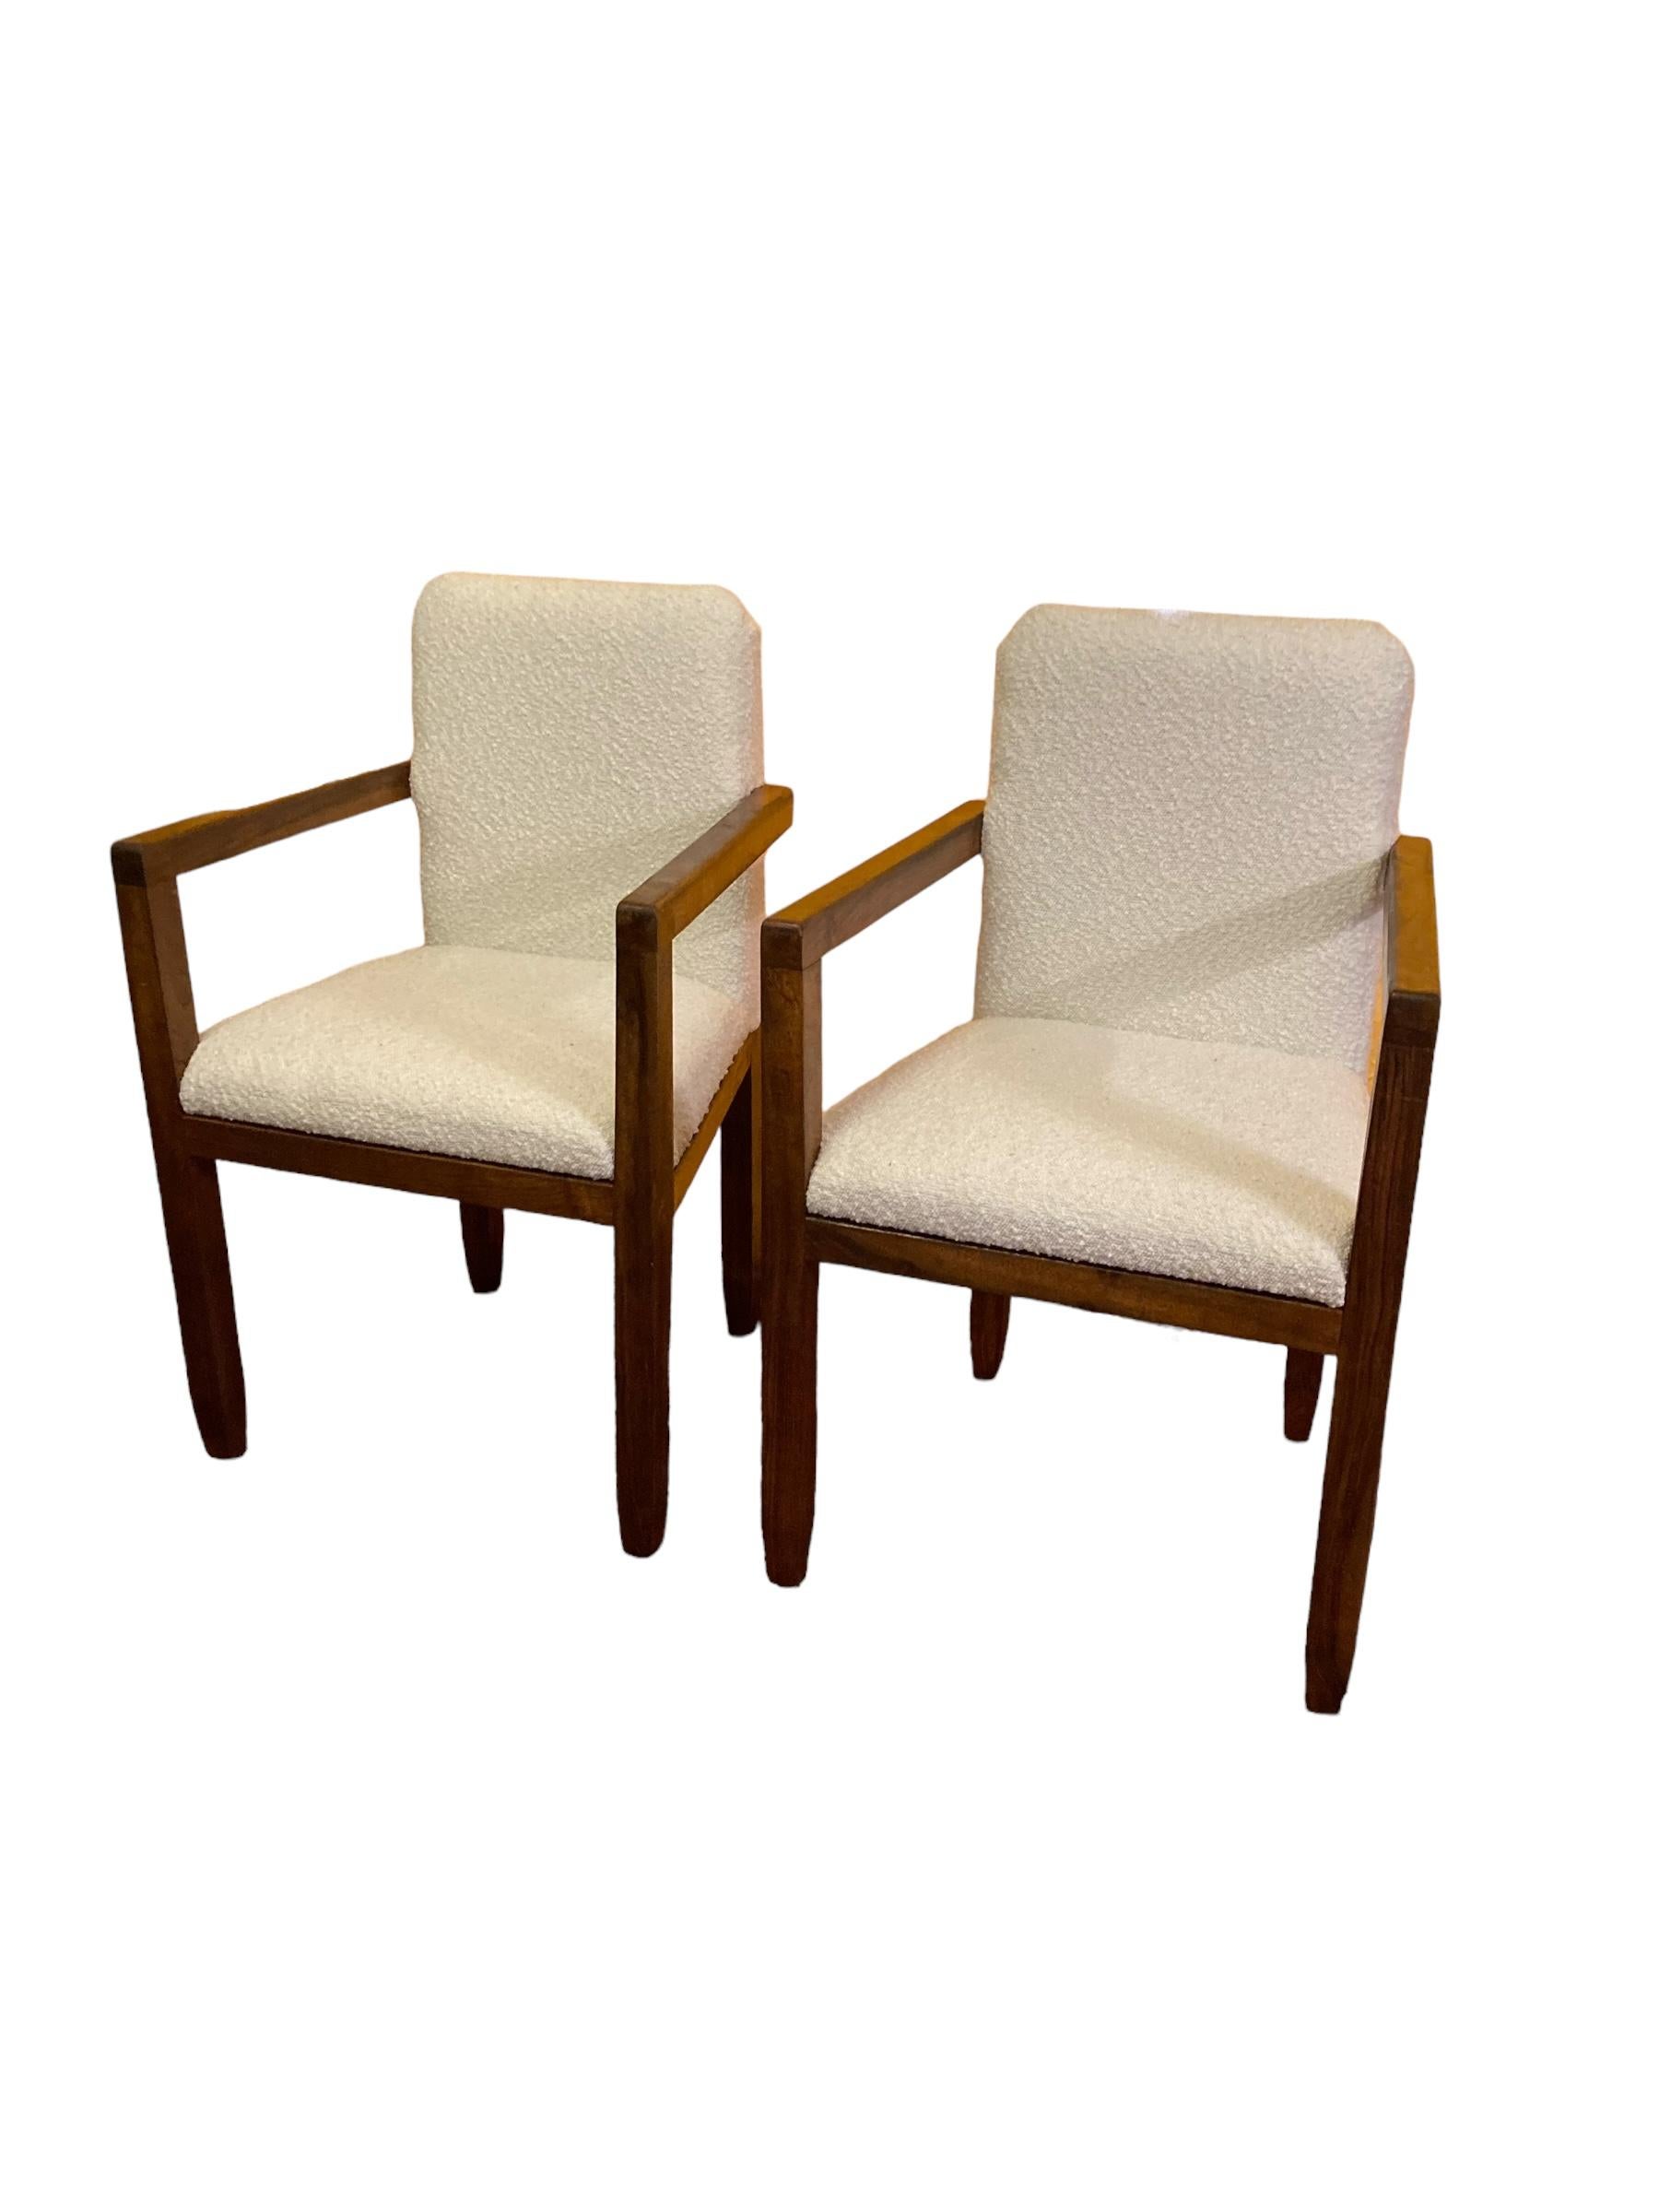 Paire de fauteuils Art Déco à cadre en acajou, tapisserie en boucles blanches, années 1920. Fabriqué à la main et de construction solide. Ces chaises sont à la fois rares et inhabituelles.  Ils présentent un design tout à fait unique qui s'adapte à